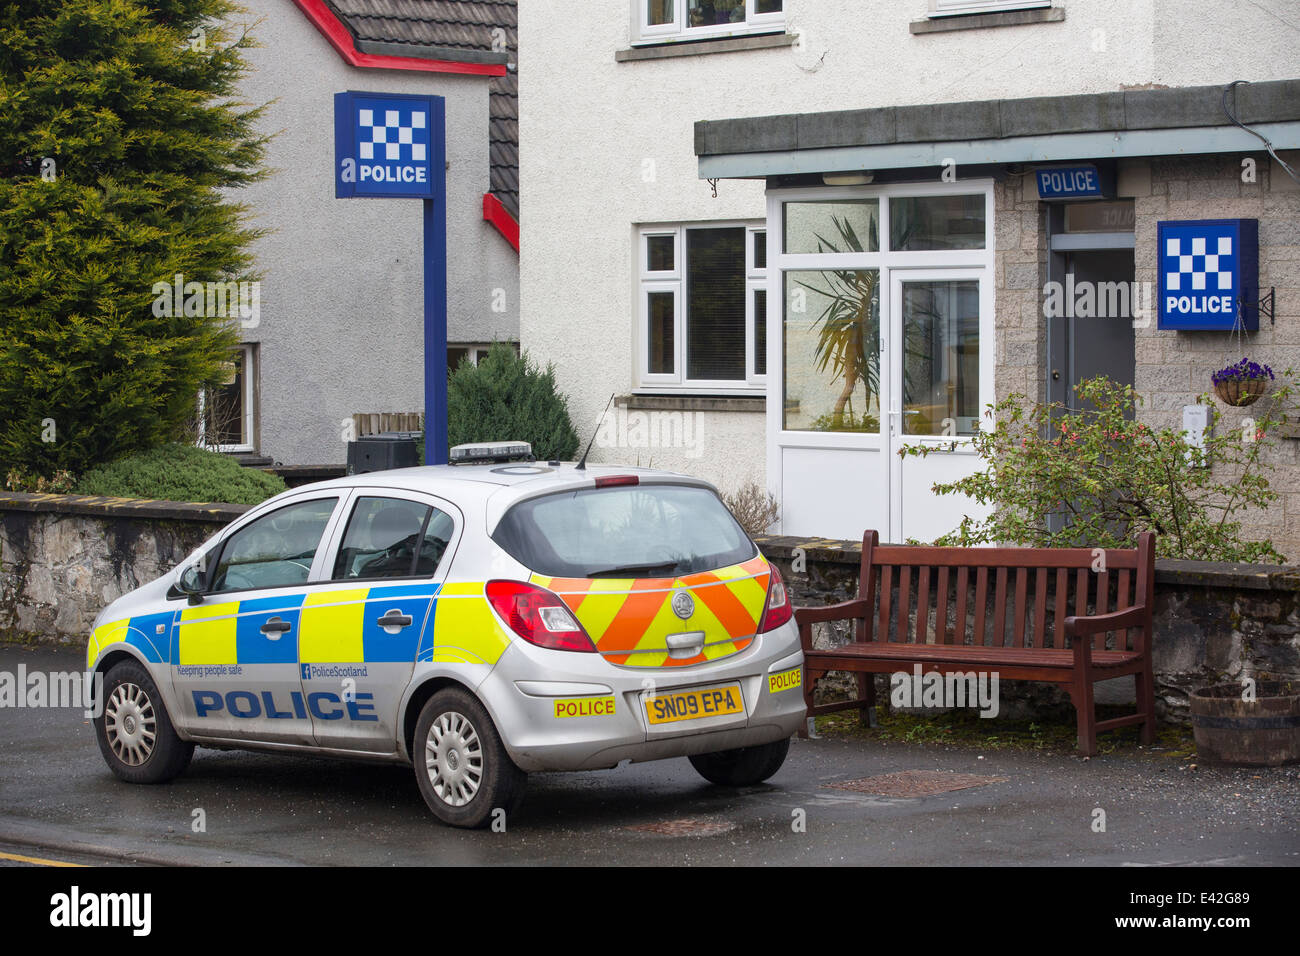 A police station in Killin, Scotland, UK. Stock Photo